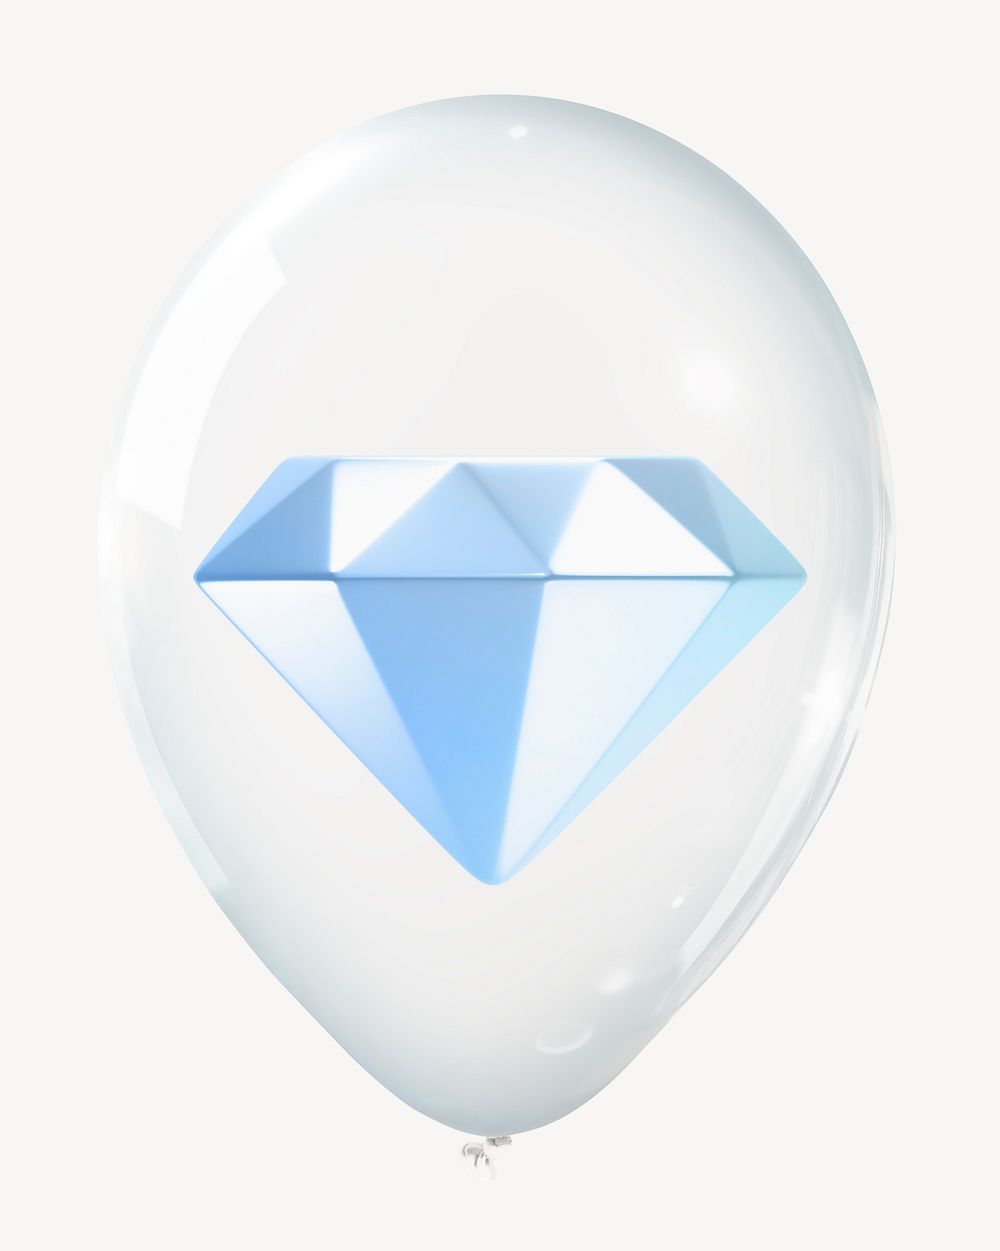 Diamond 3D balloon, aesthetic clipart